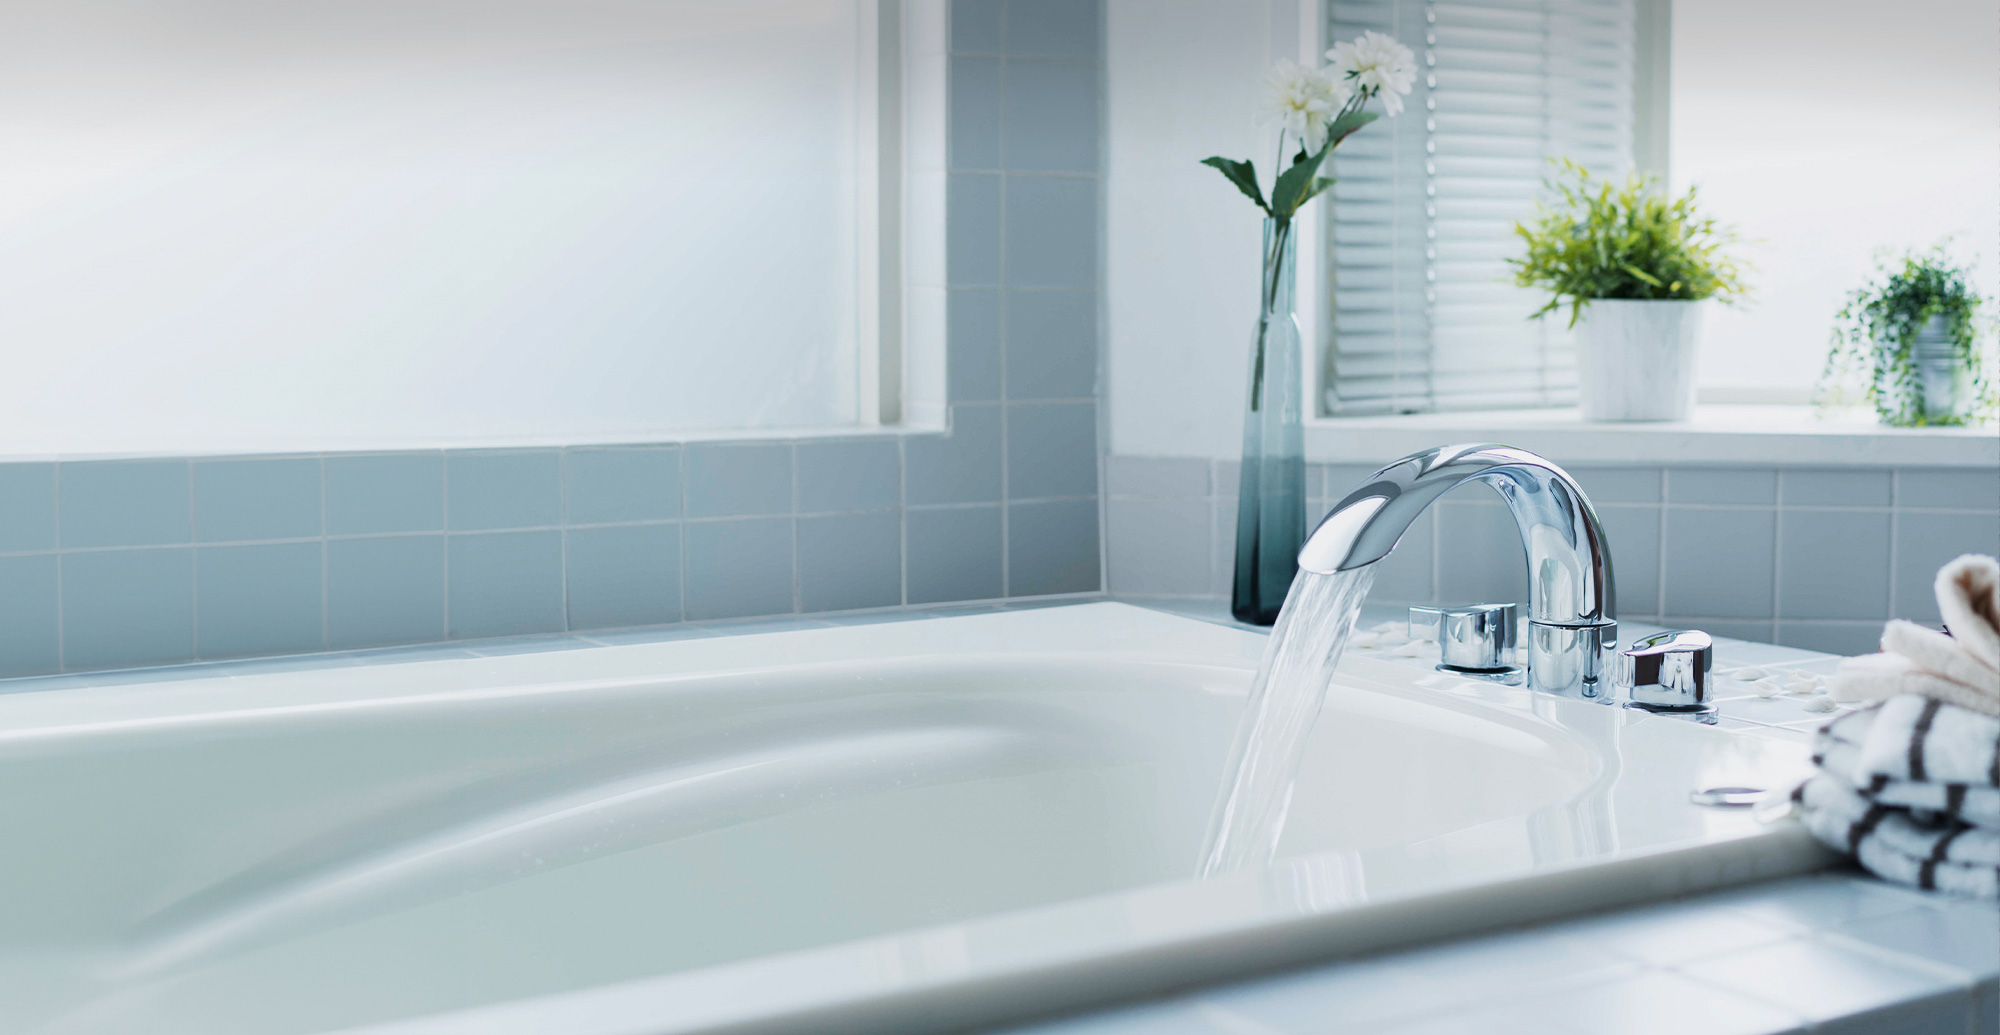 トイレ・お風呂・洗面所など、水道設備の設置ならMJ環境サービスにお任せください。